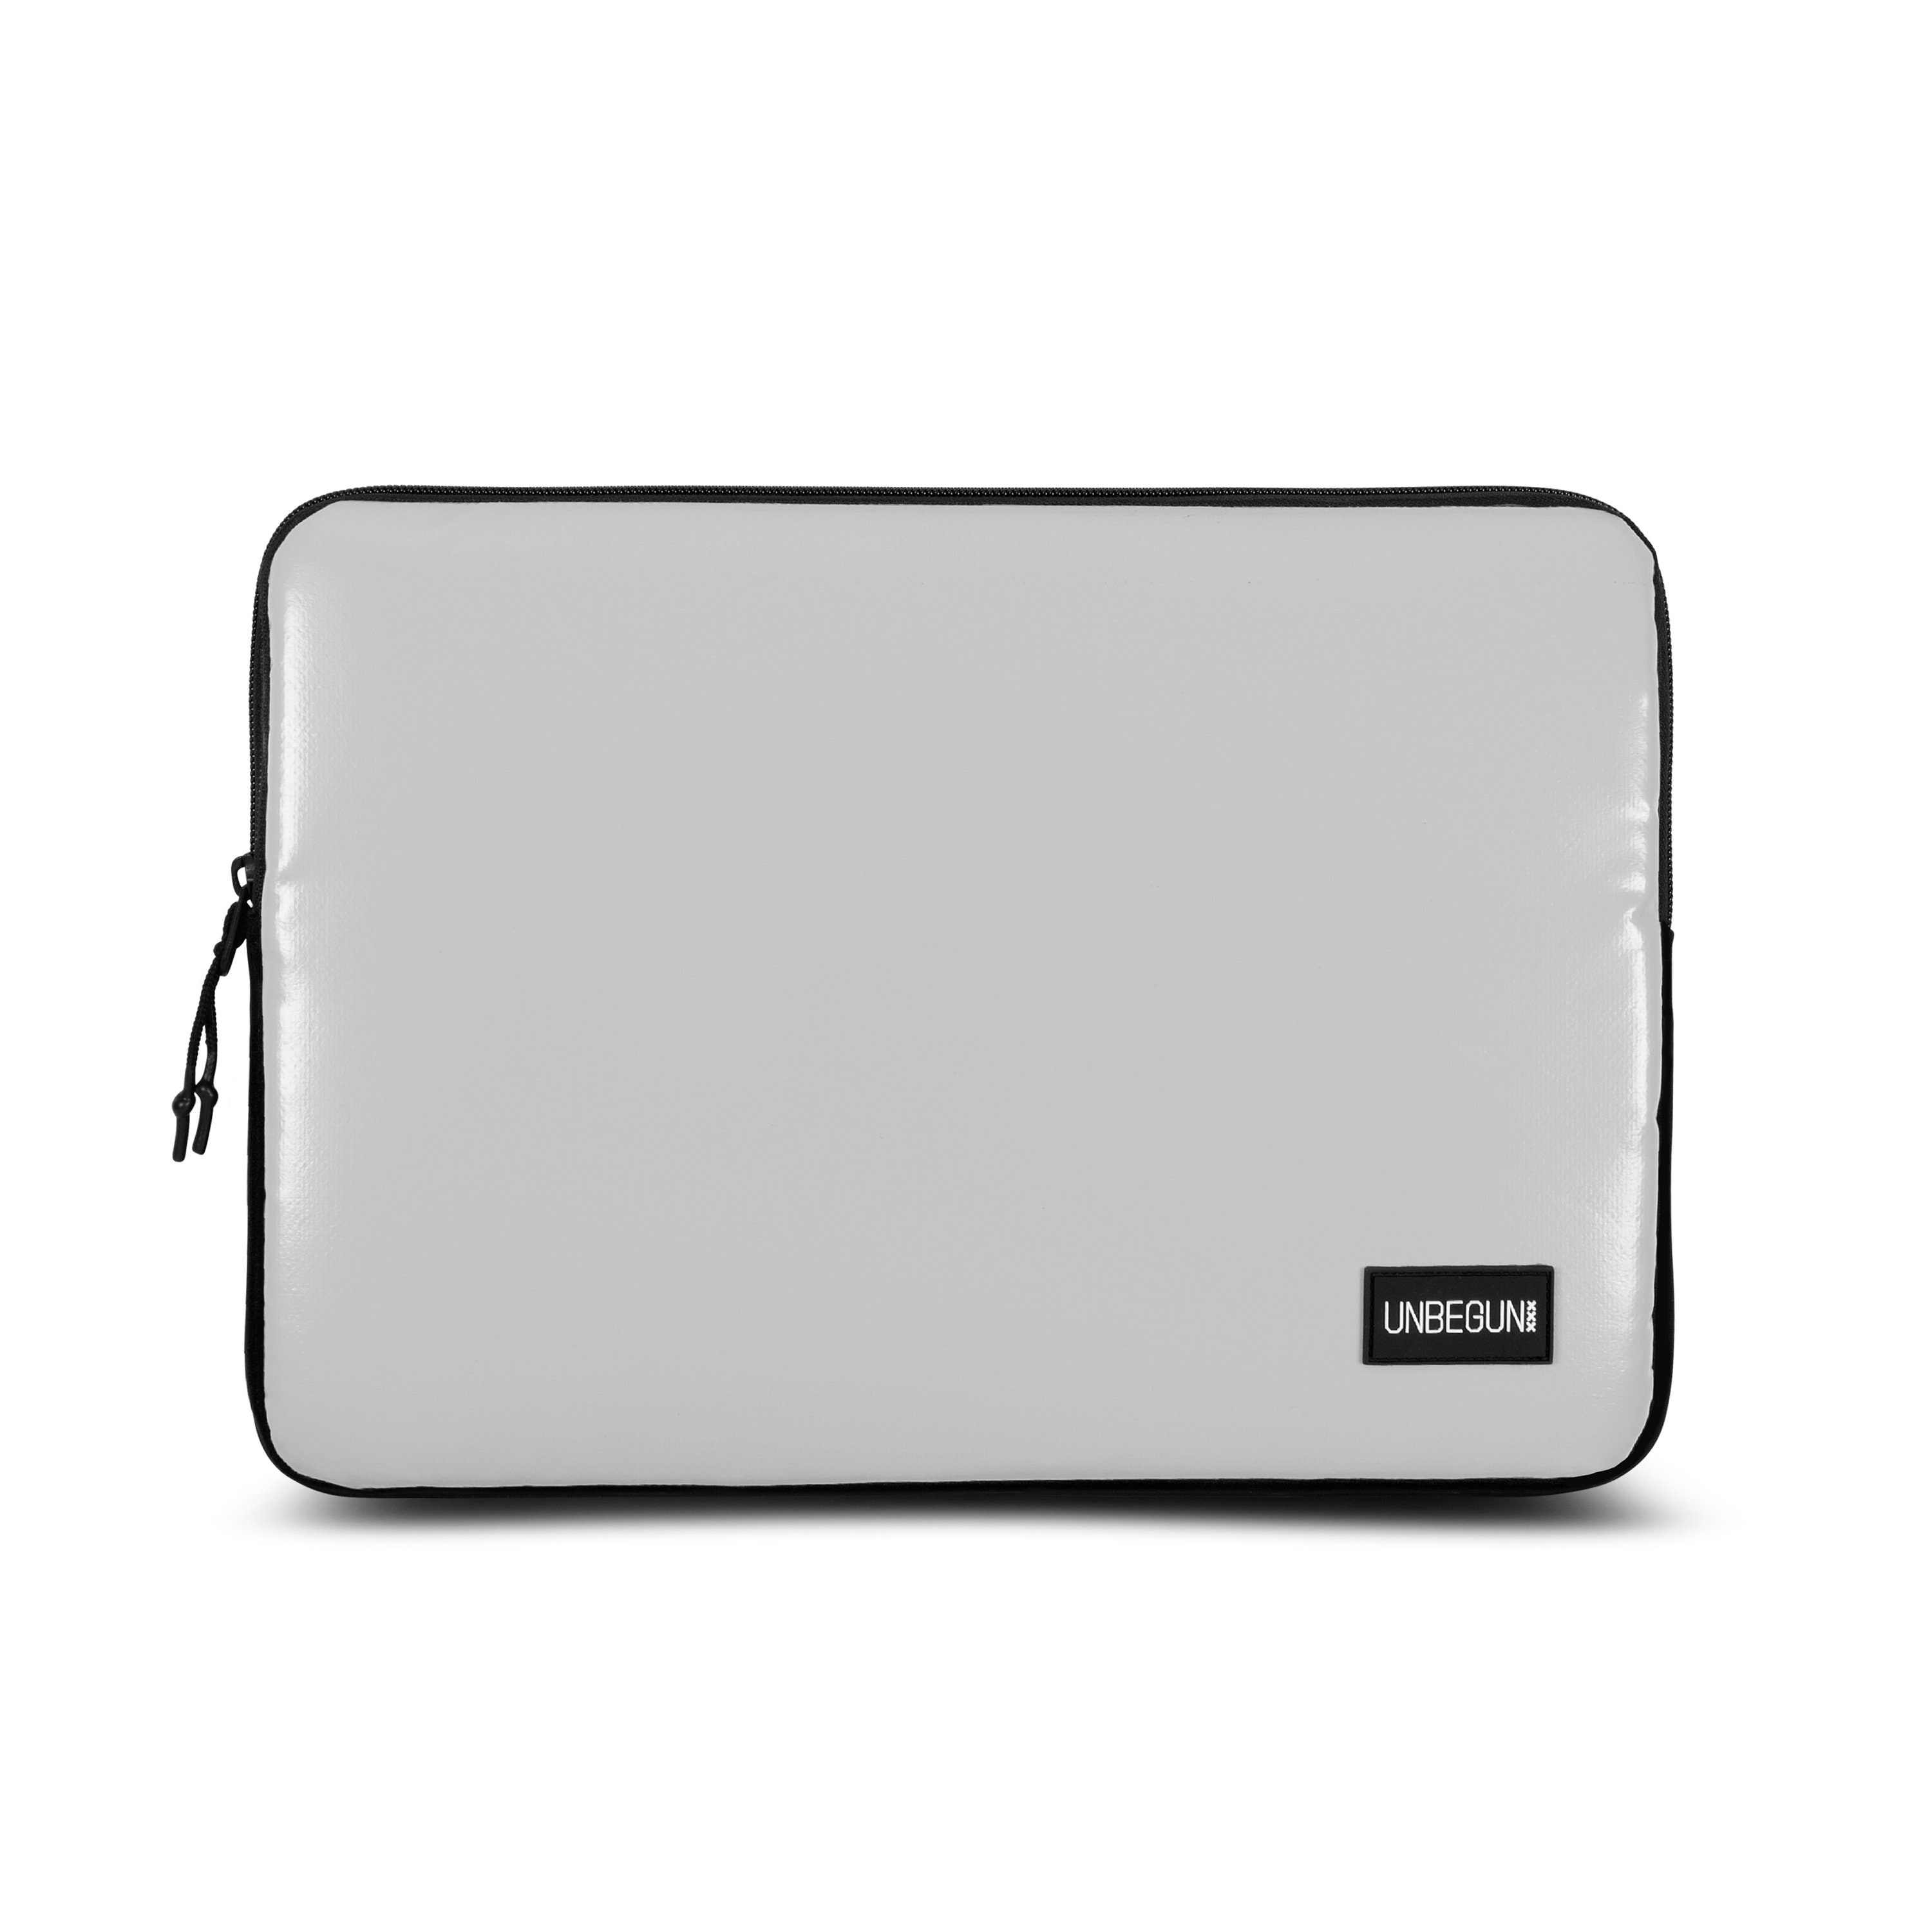 Mw - Housse MacBook Pro 13 Noir / Blanc - Sacoche, Housse et Sac